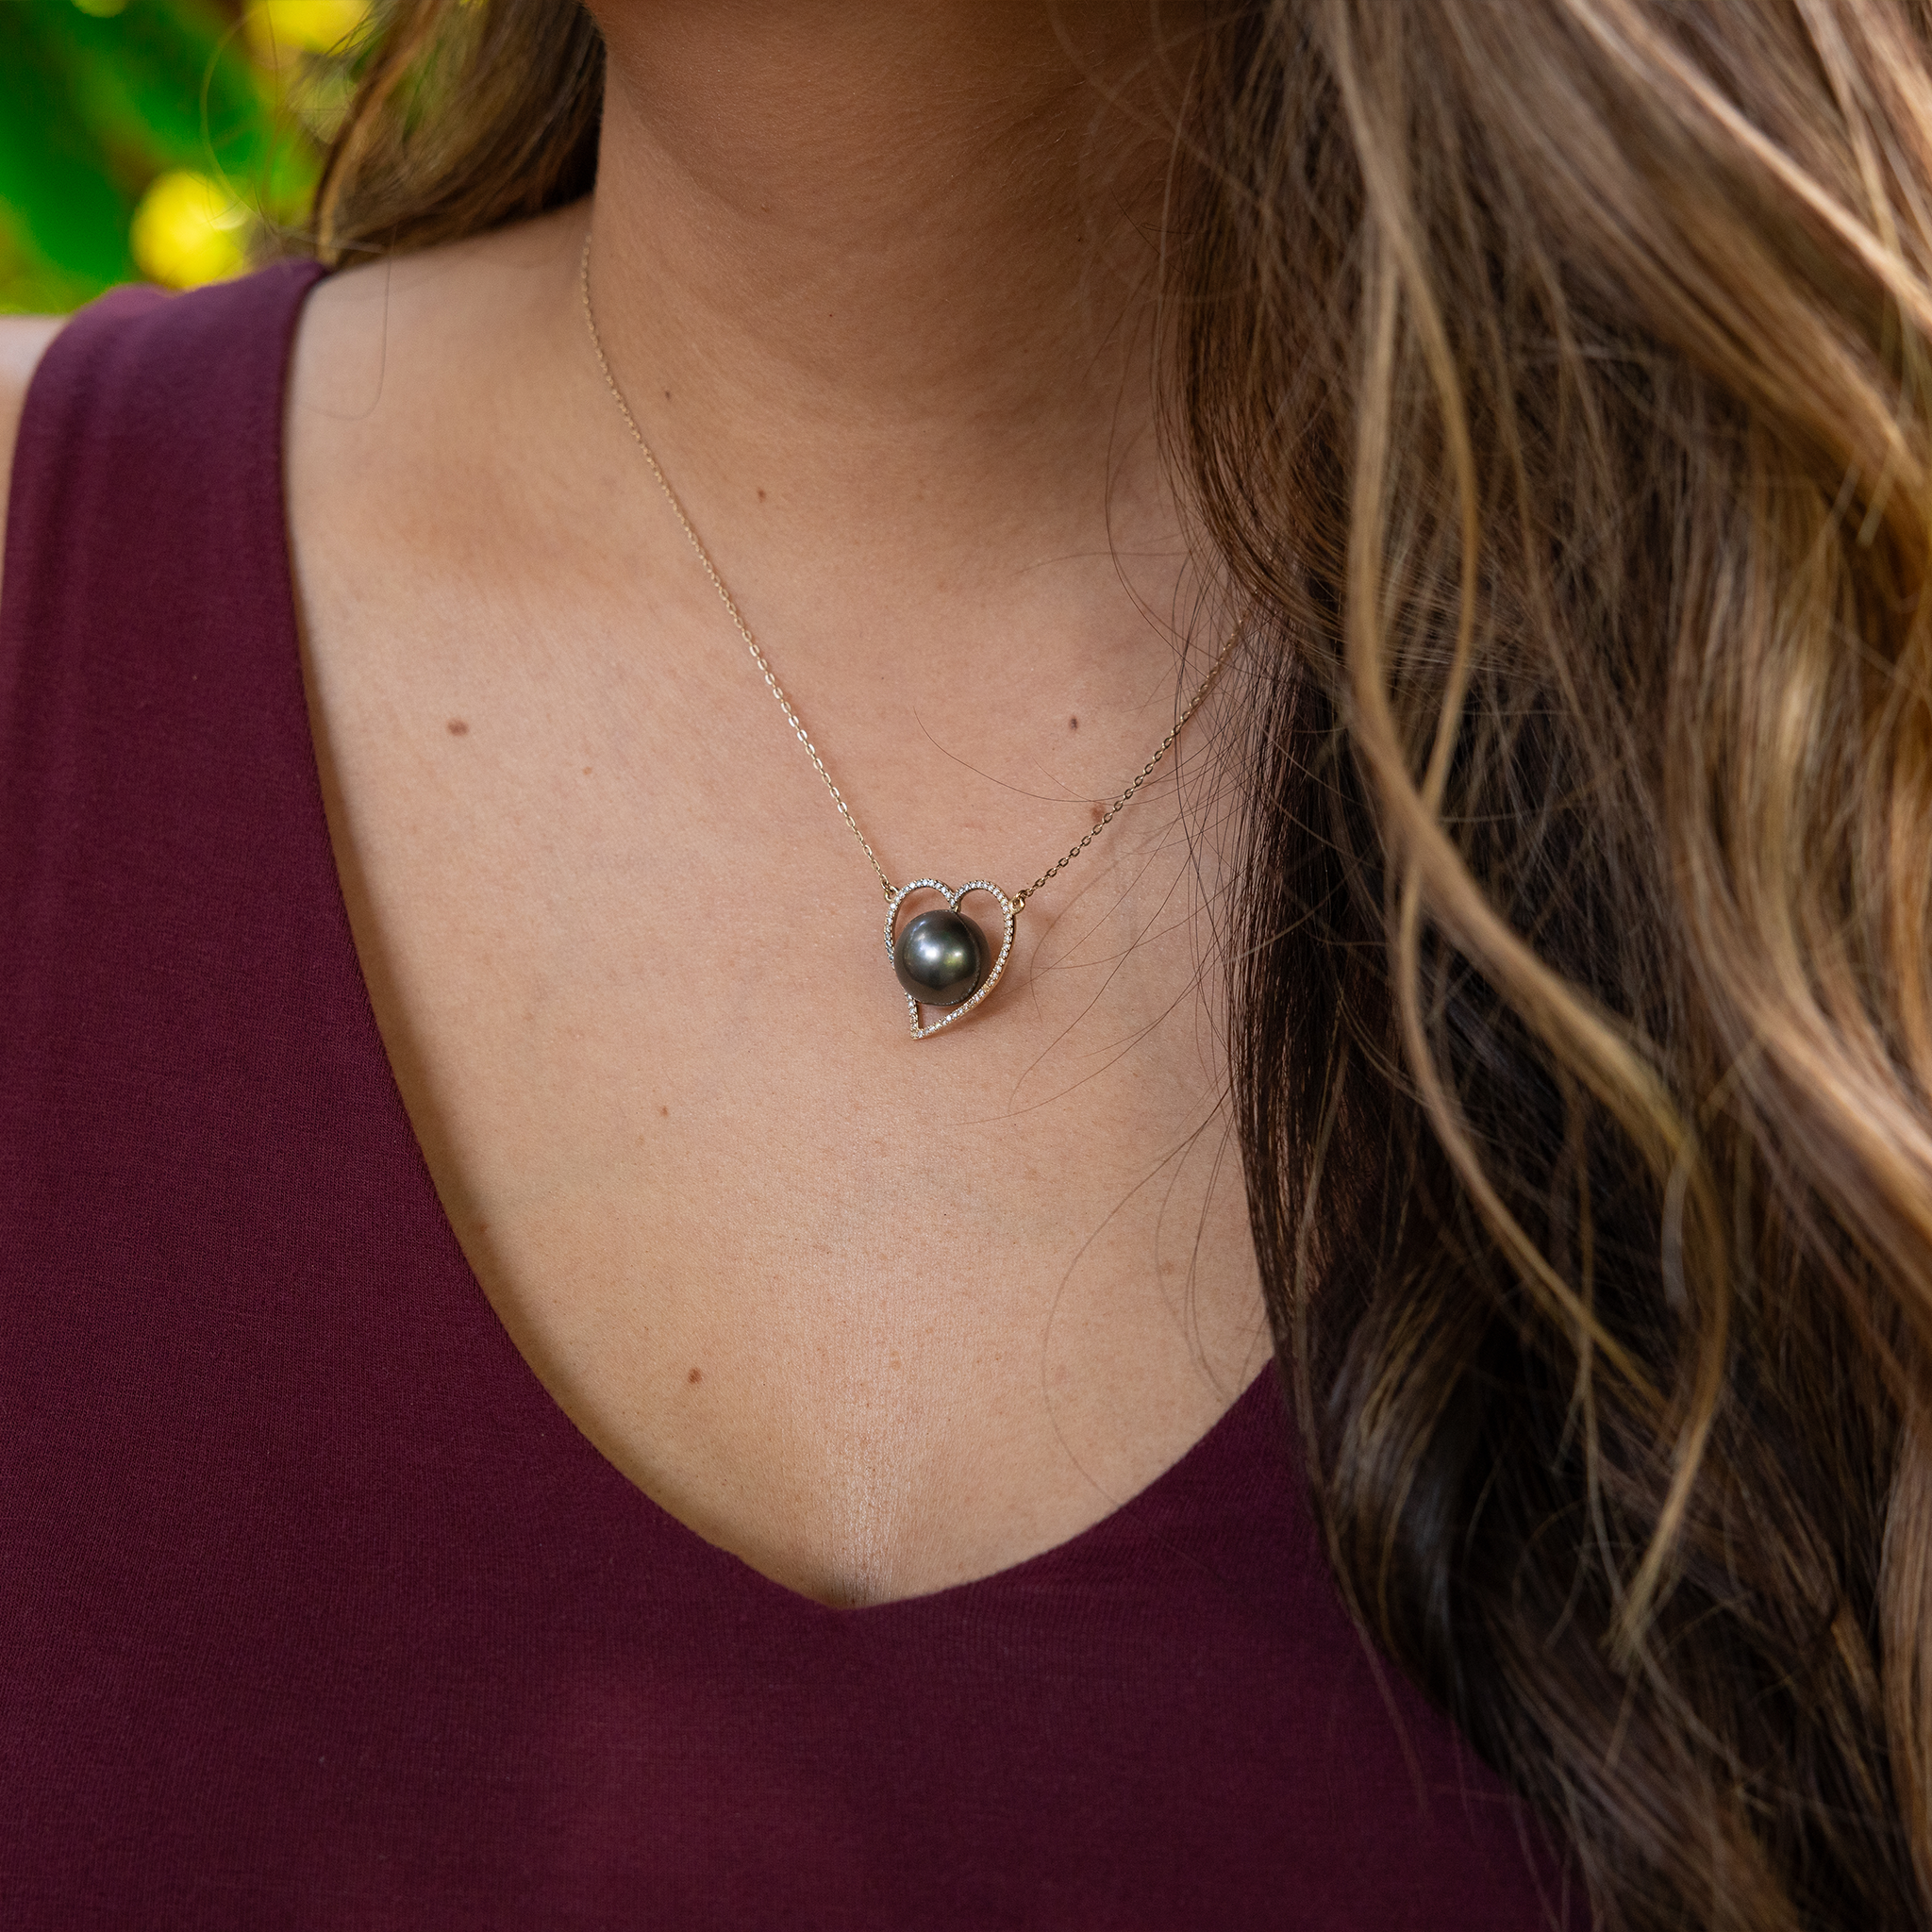 16 "Collier de coeur de perle noir tahitien en or - 12-13 mm